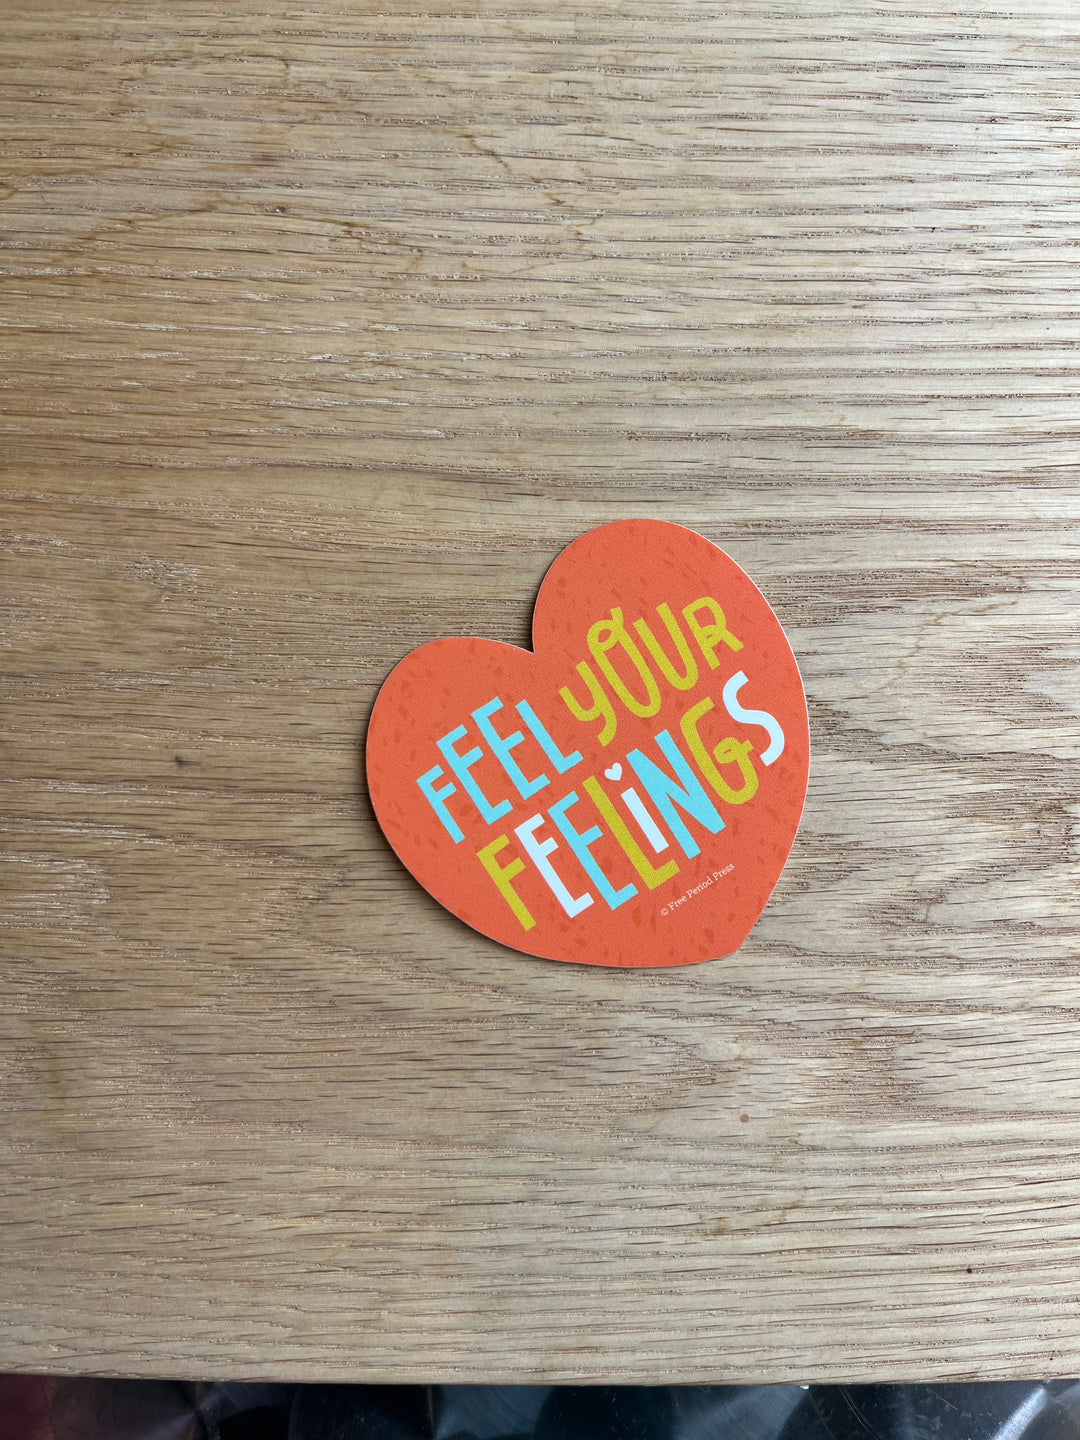 Feel Your Feelings Sticker